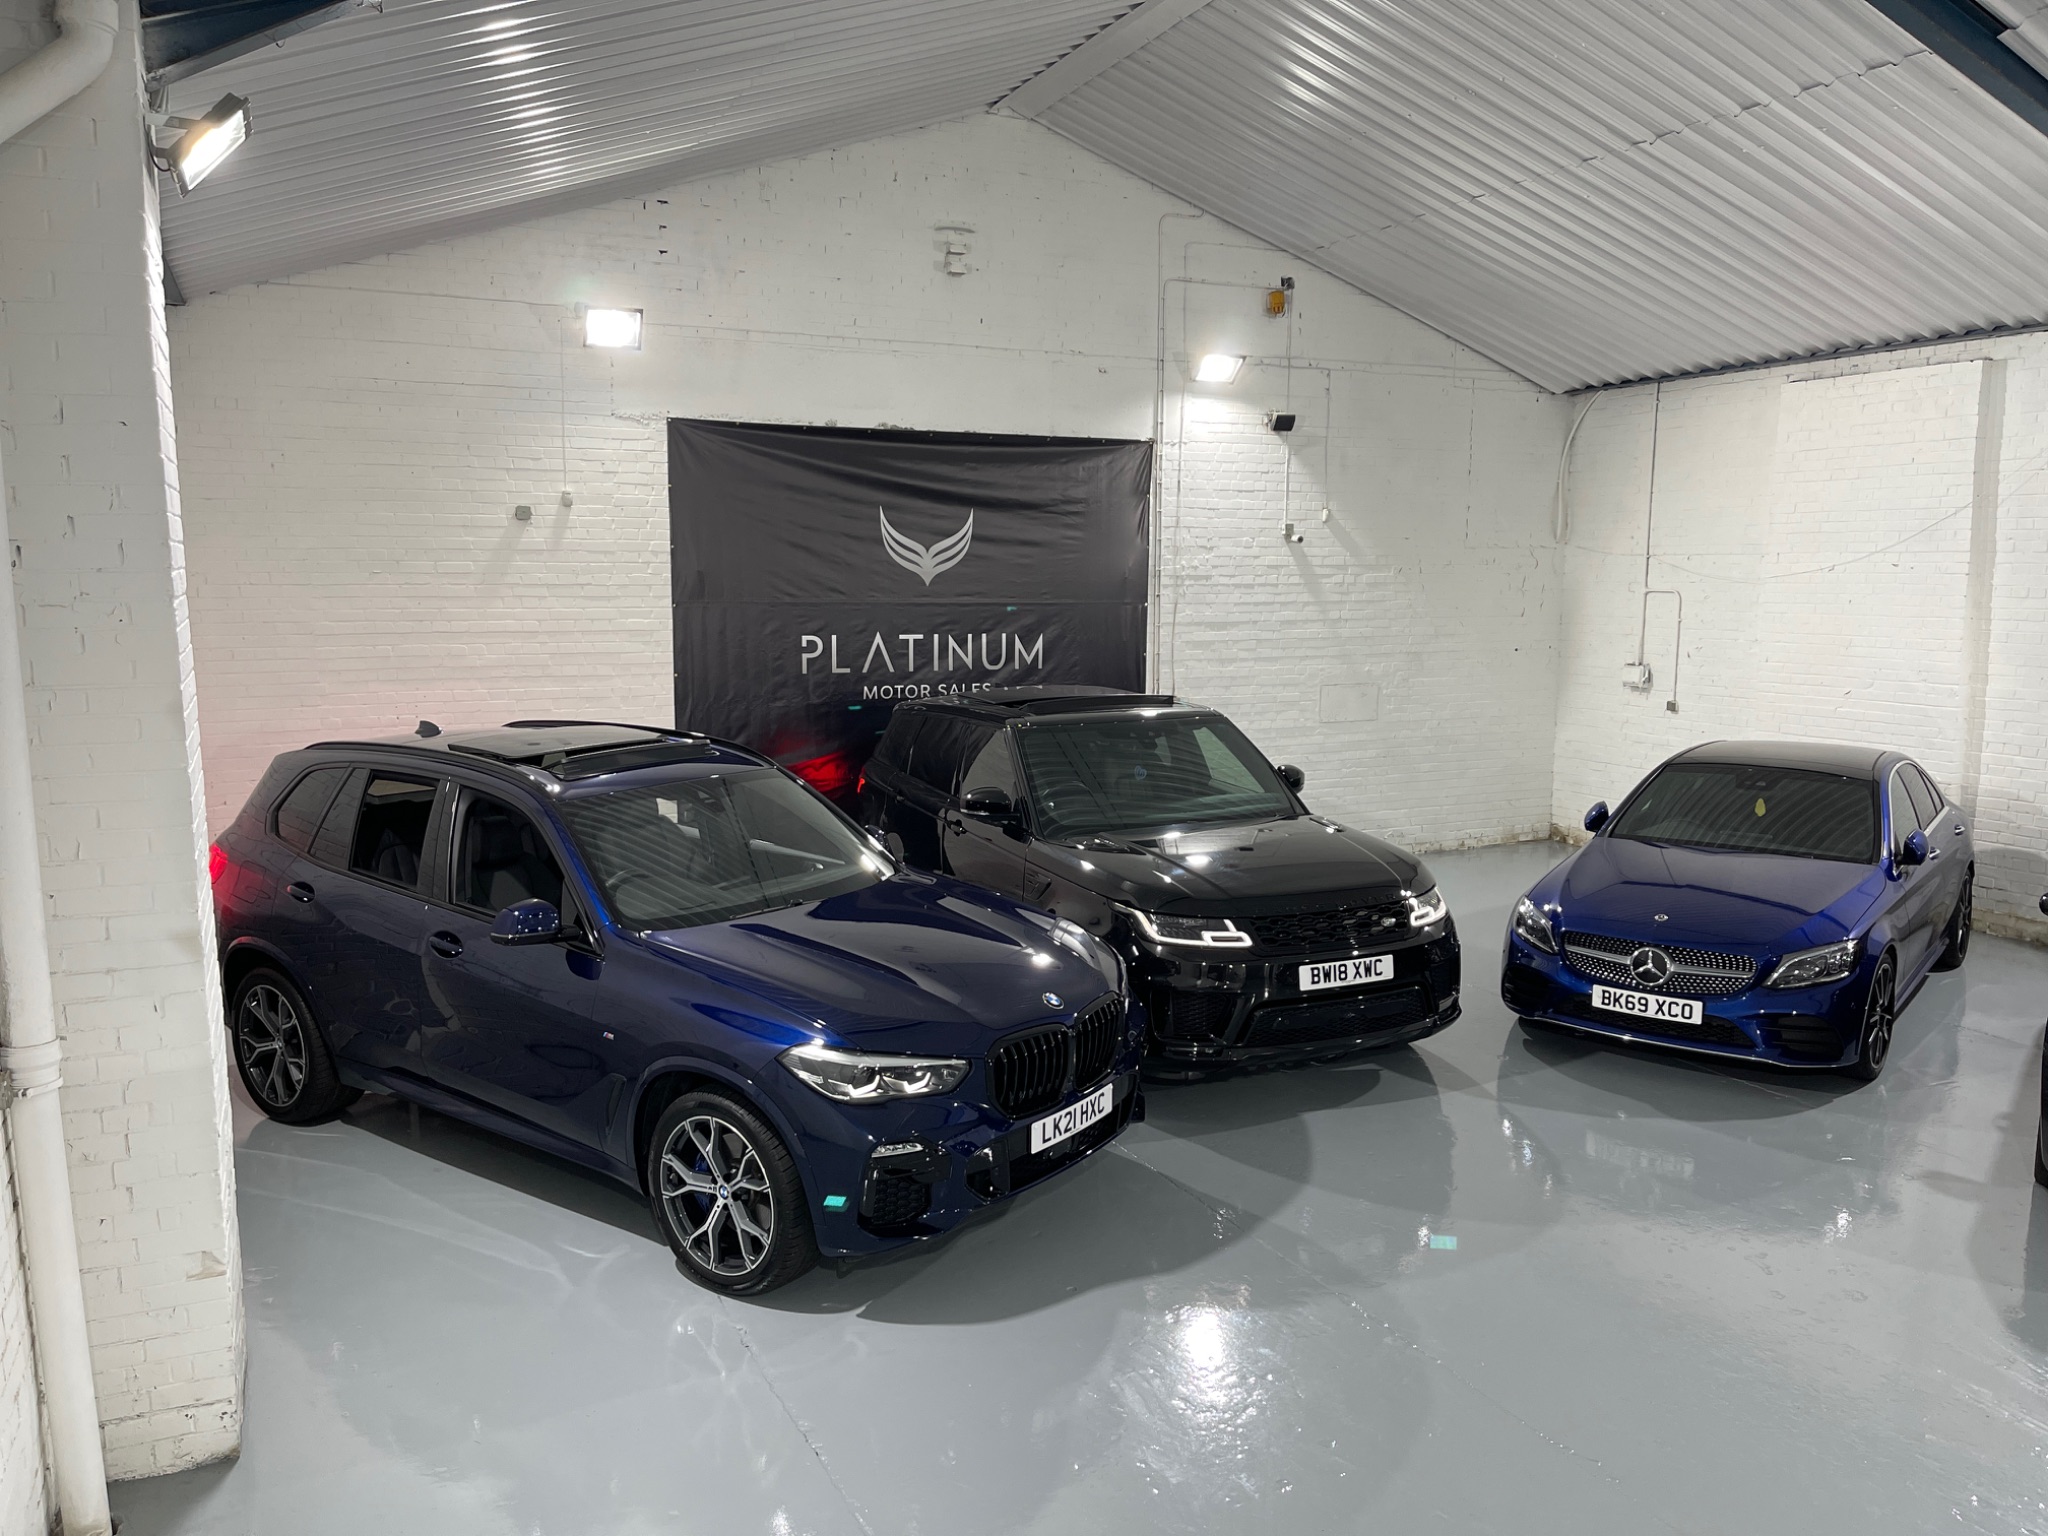 Platinum Motor Sales | Car dealership in West Bromwich | AutoTrader